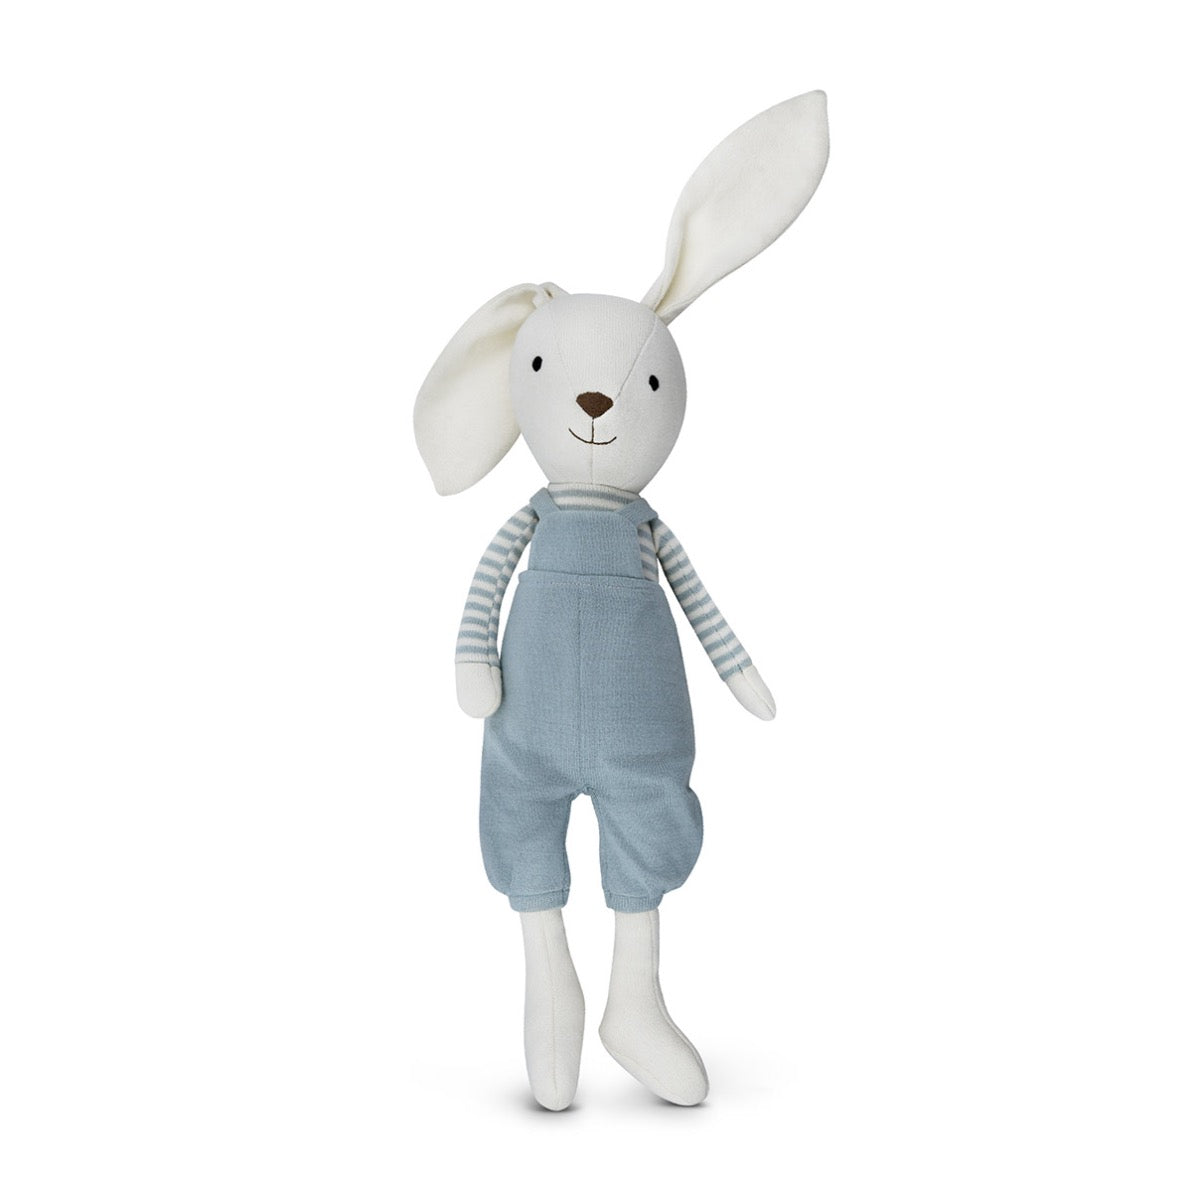 Knit Bunny Plush - Finn